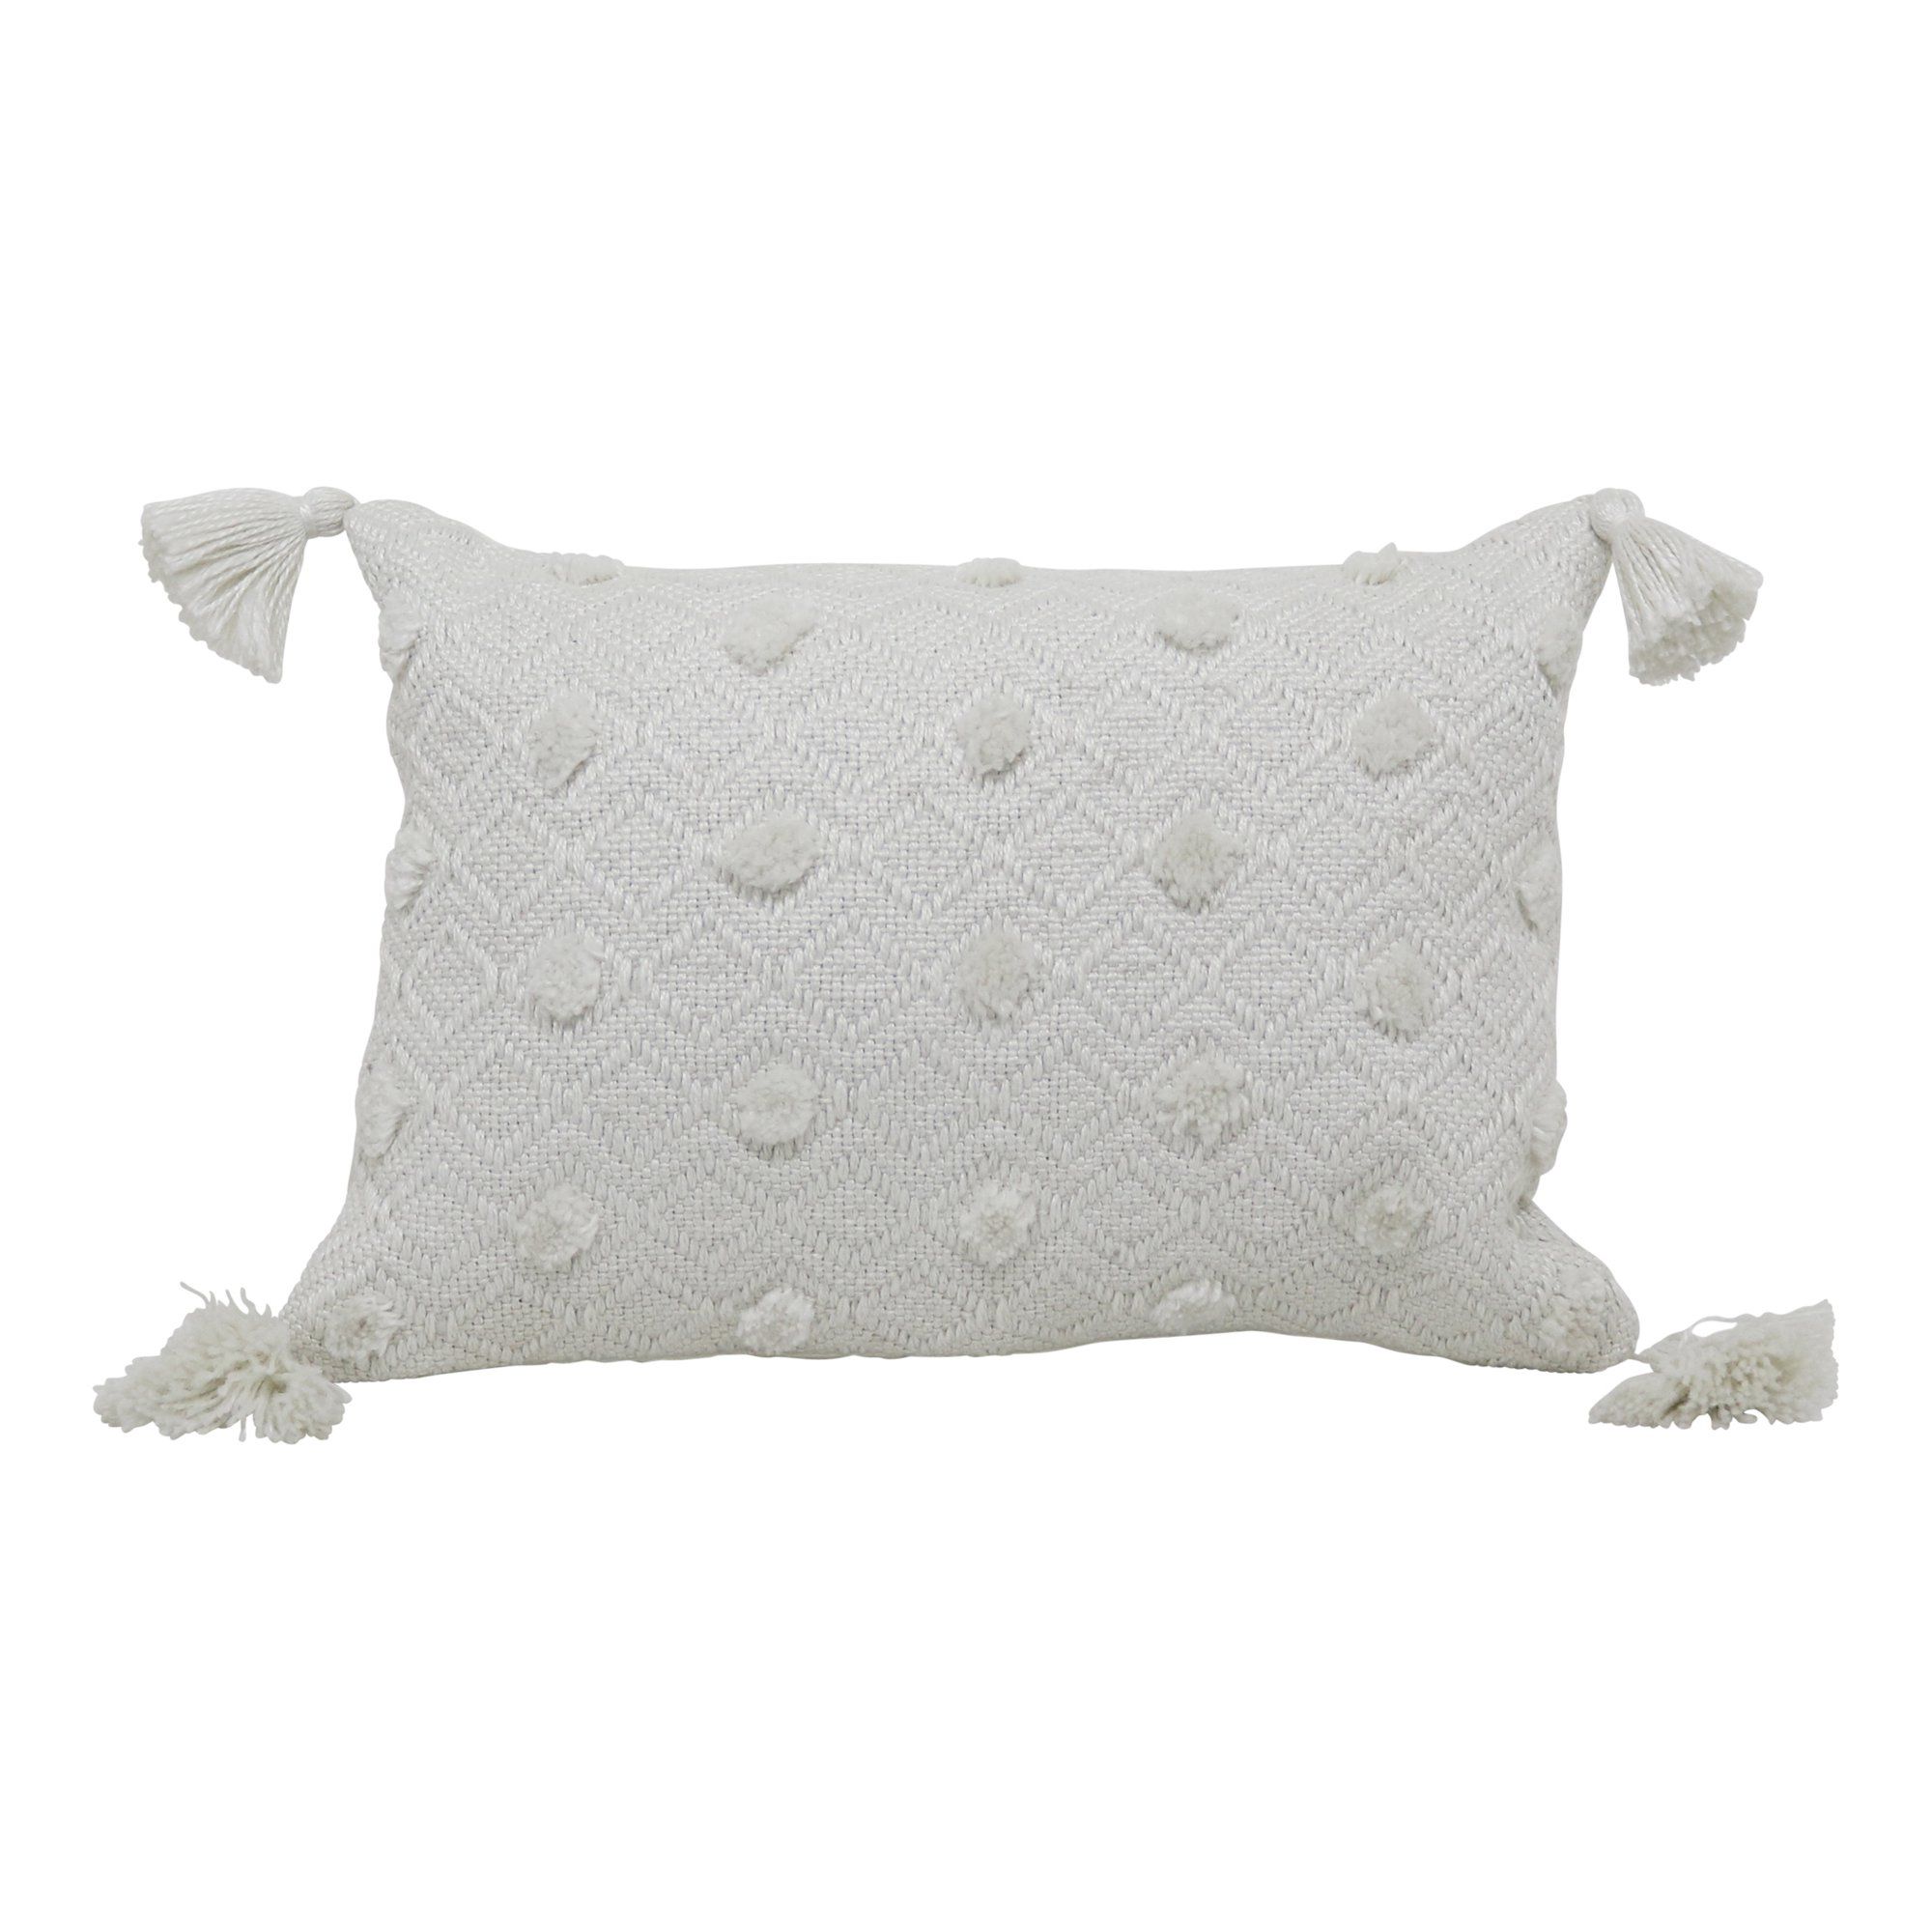 Better Homes & Gardens 13" x 19" Outdoor Toss Pillow, Ivory Woven | Walmart (US)